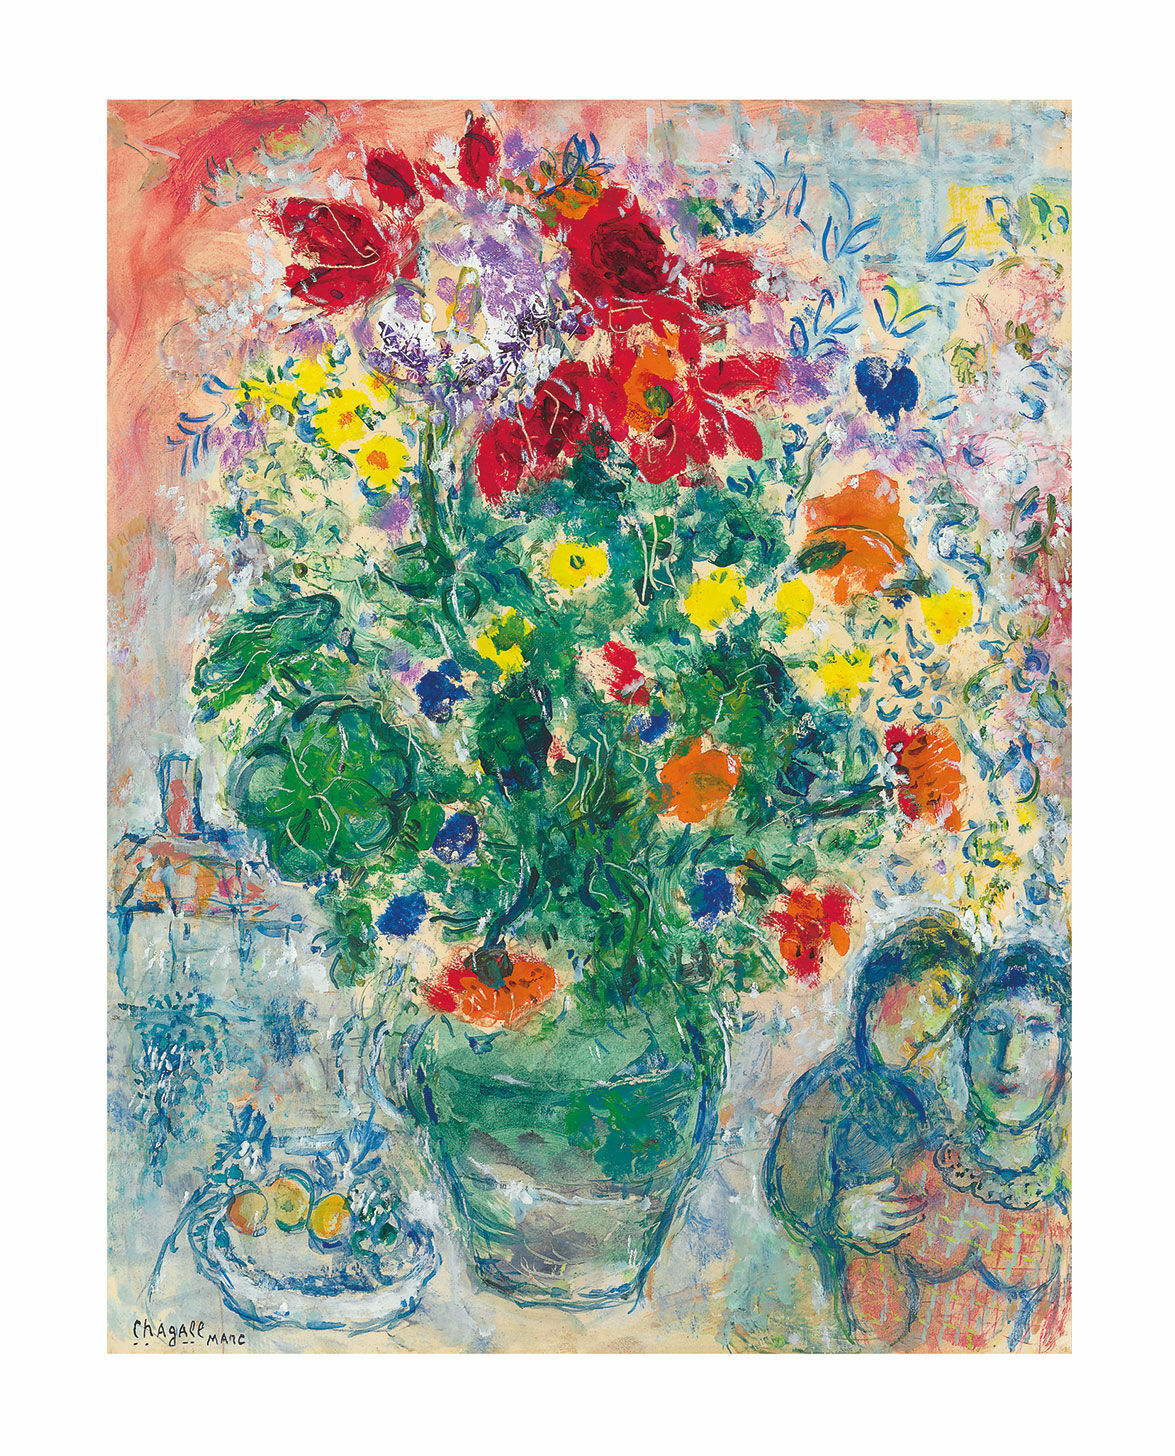 Billede "Bouquet de Renoncules" (1968), uindrammet von Marc Chagall